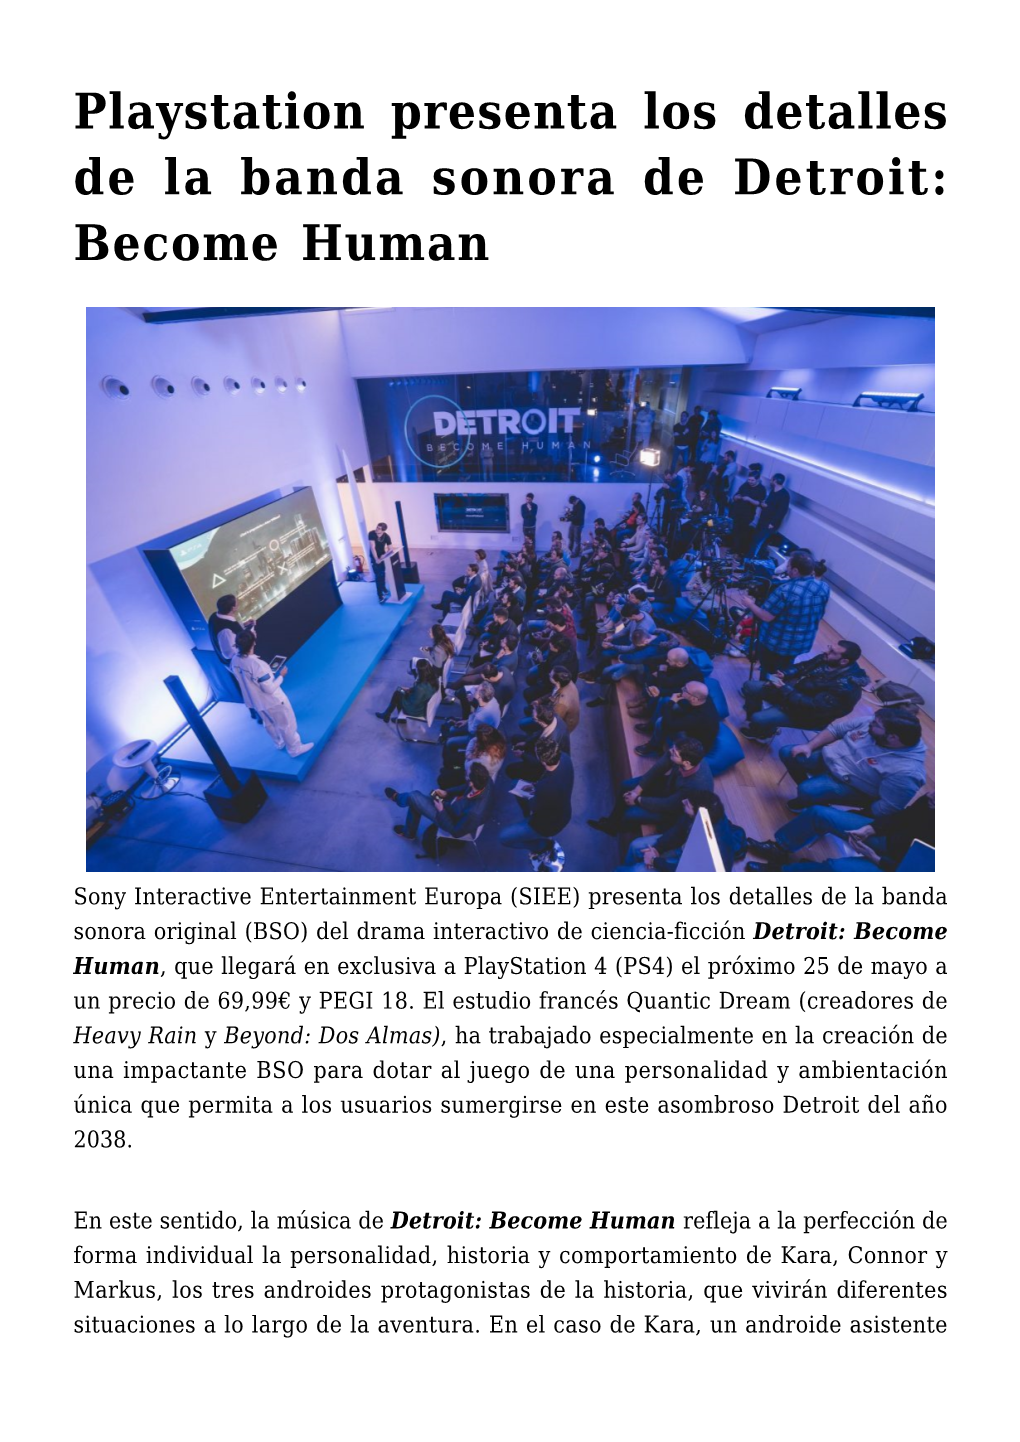 Playstation Presenta Los Detalles De La Banda Sonora De Detroit: Become Human